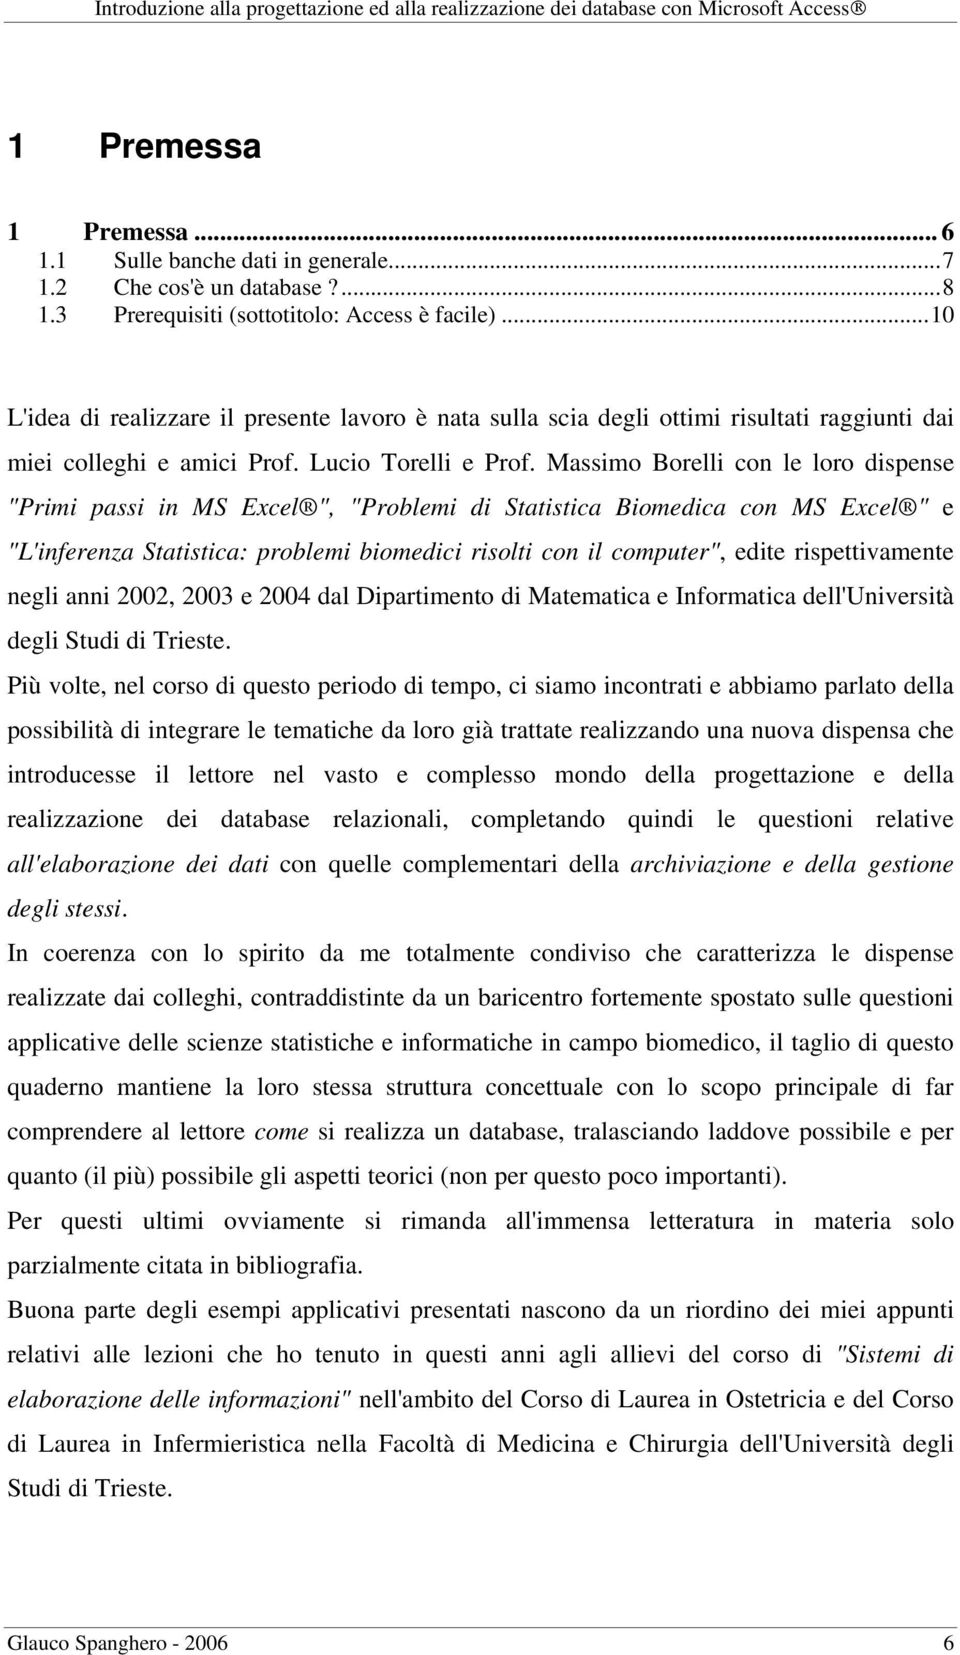 Massimo Borelli con le loro dispense "Primi passi in MS Excel ", "Problemi di Statistica Biomedica con MS Excel " e "L'inferenza Statistica: problemi biomedici risolti con il computer", edite